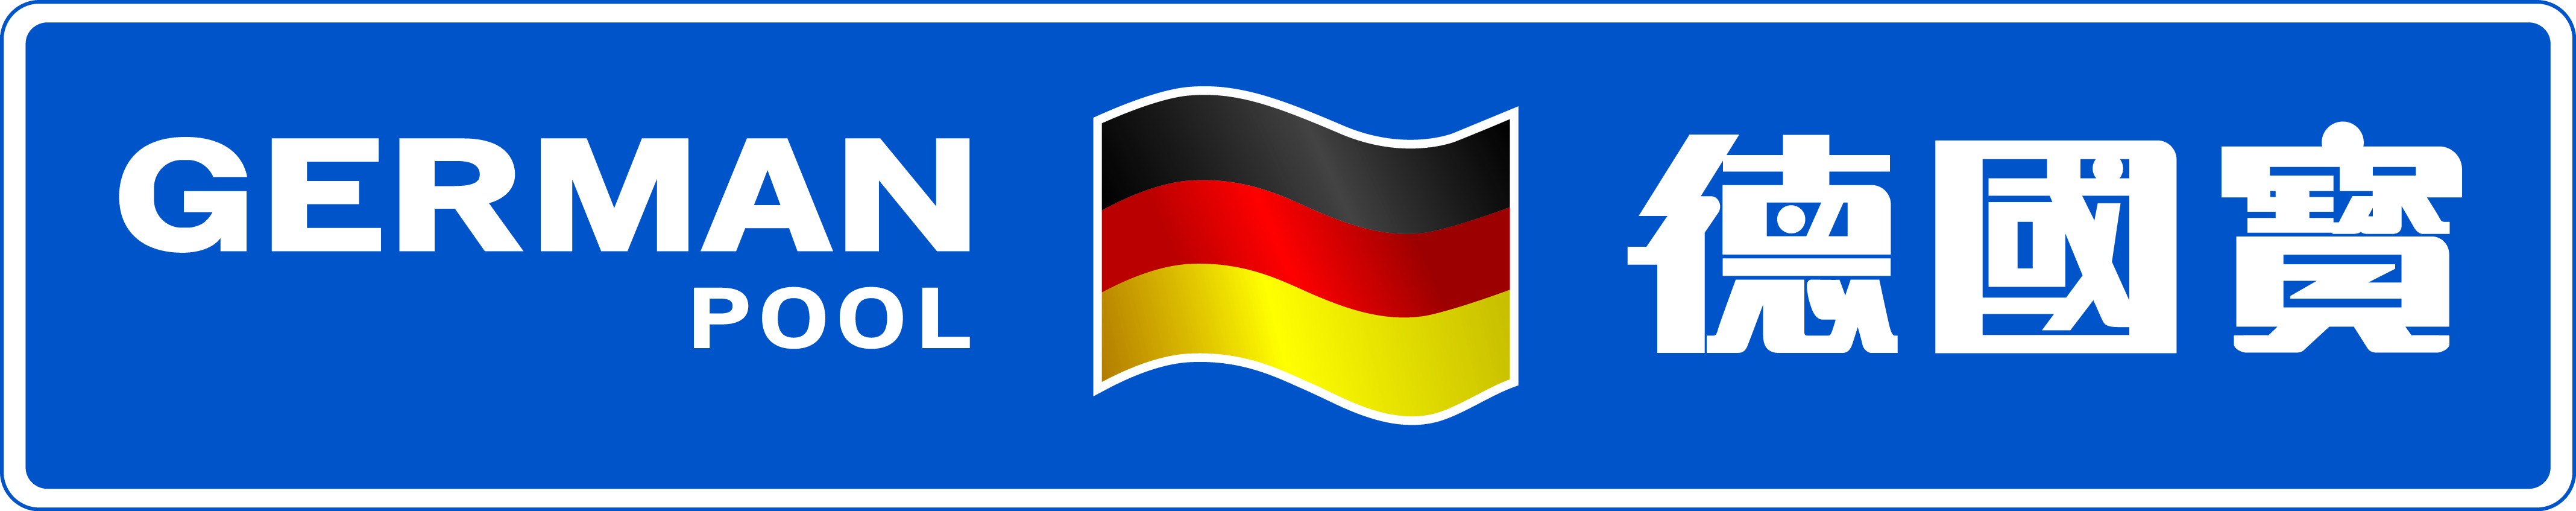 German pool